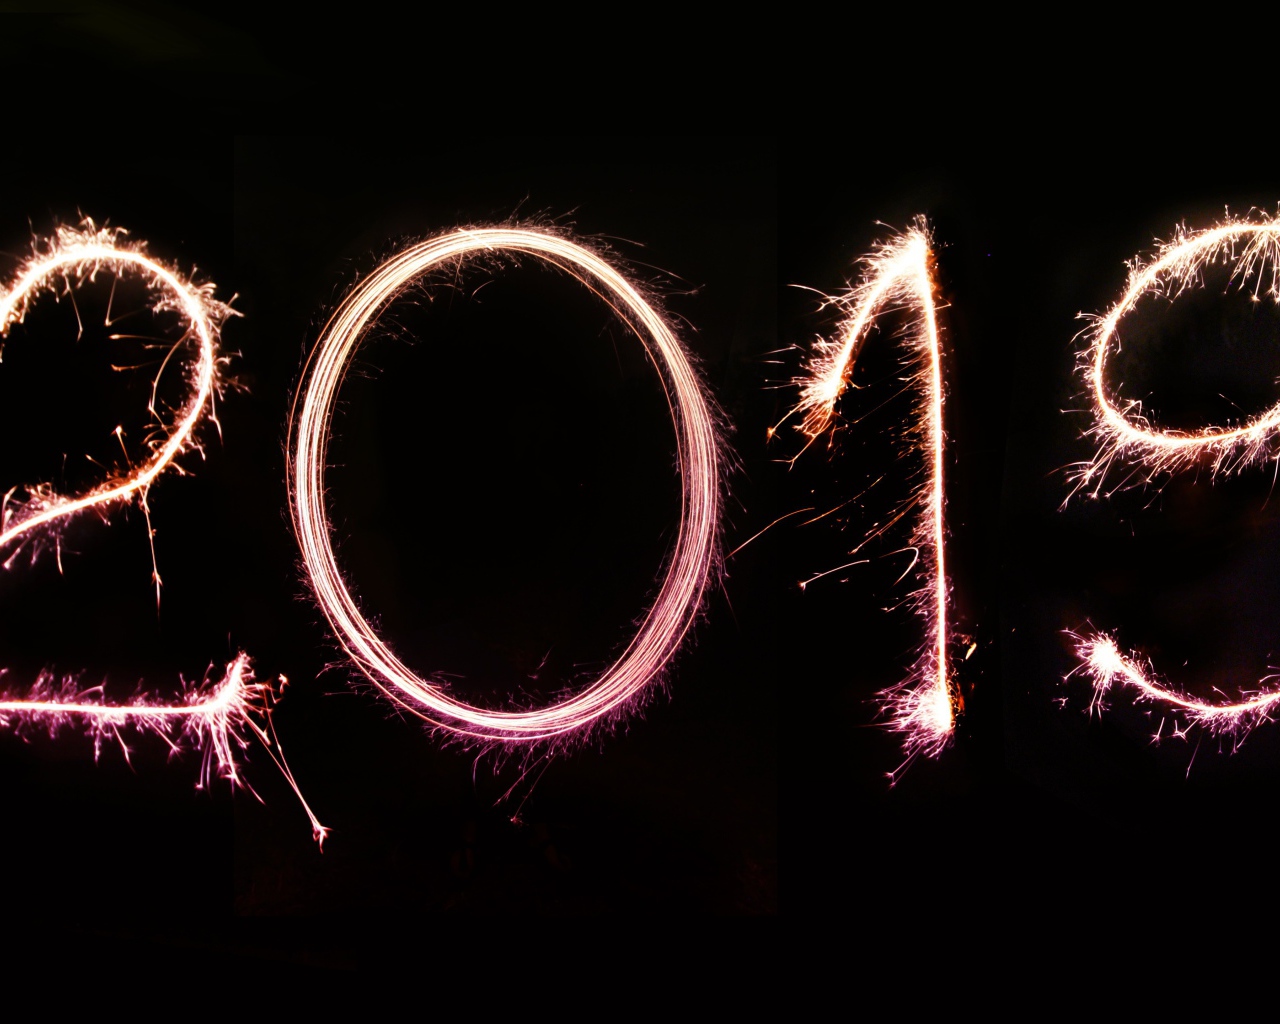 Светящиеся цифры 2019 на черном фоне на Новый год 